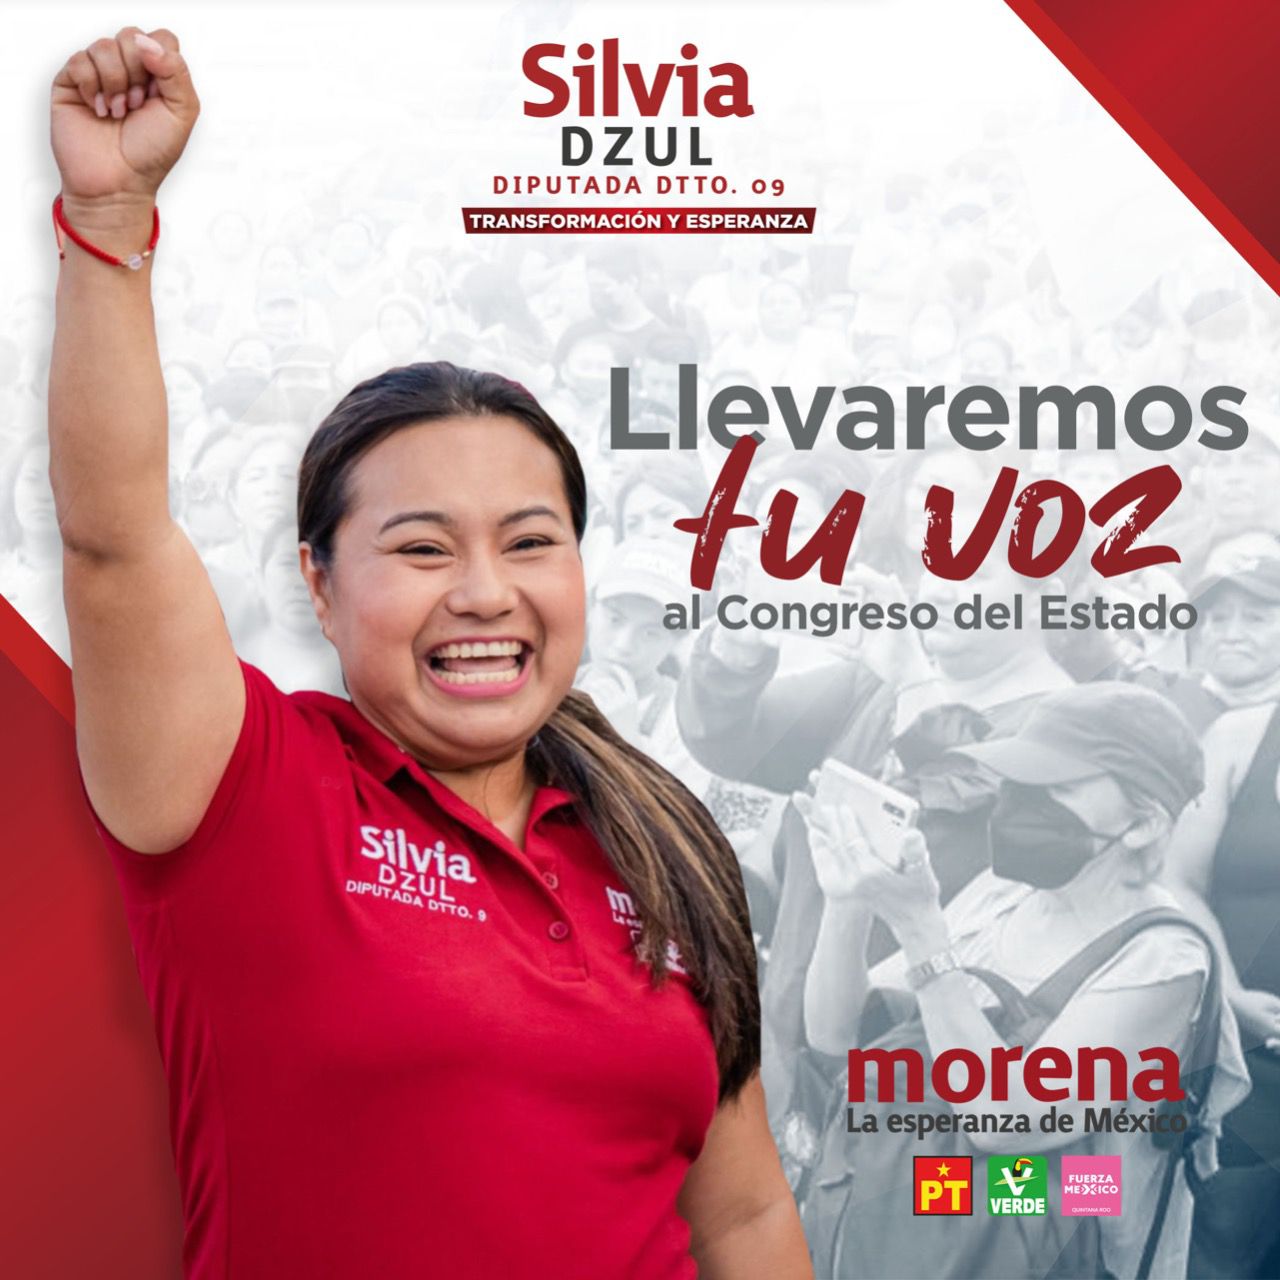 Silvia Dzul arrasará el 5 de junio gracias a la confianza de Solidaridad y Tulum